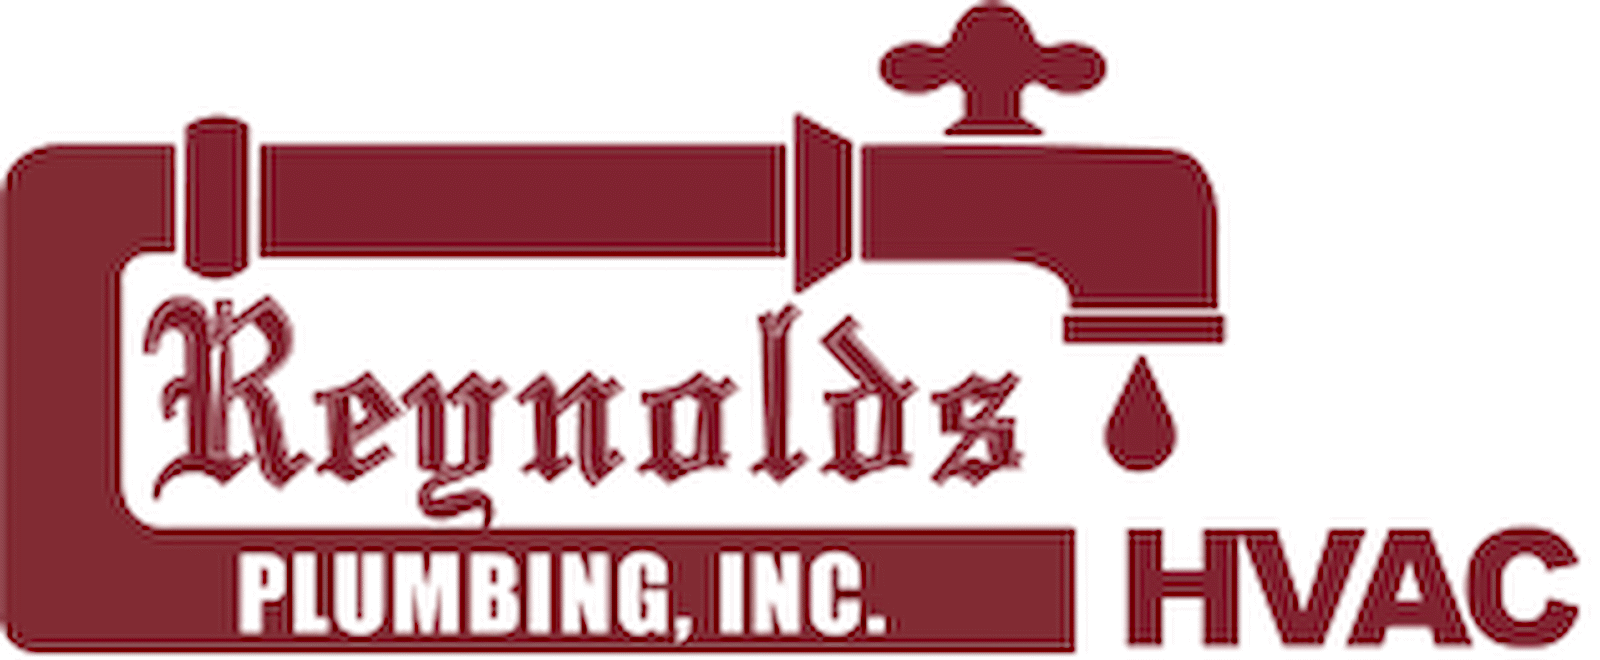 Reynolds Plumbing